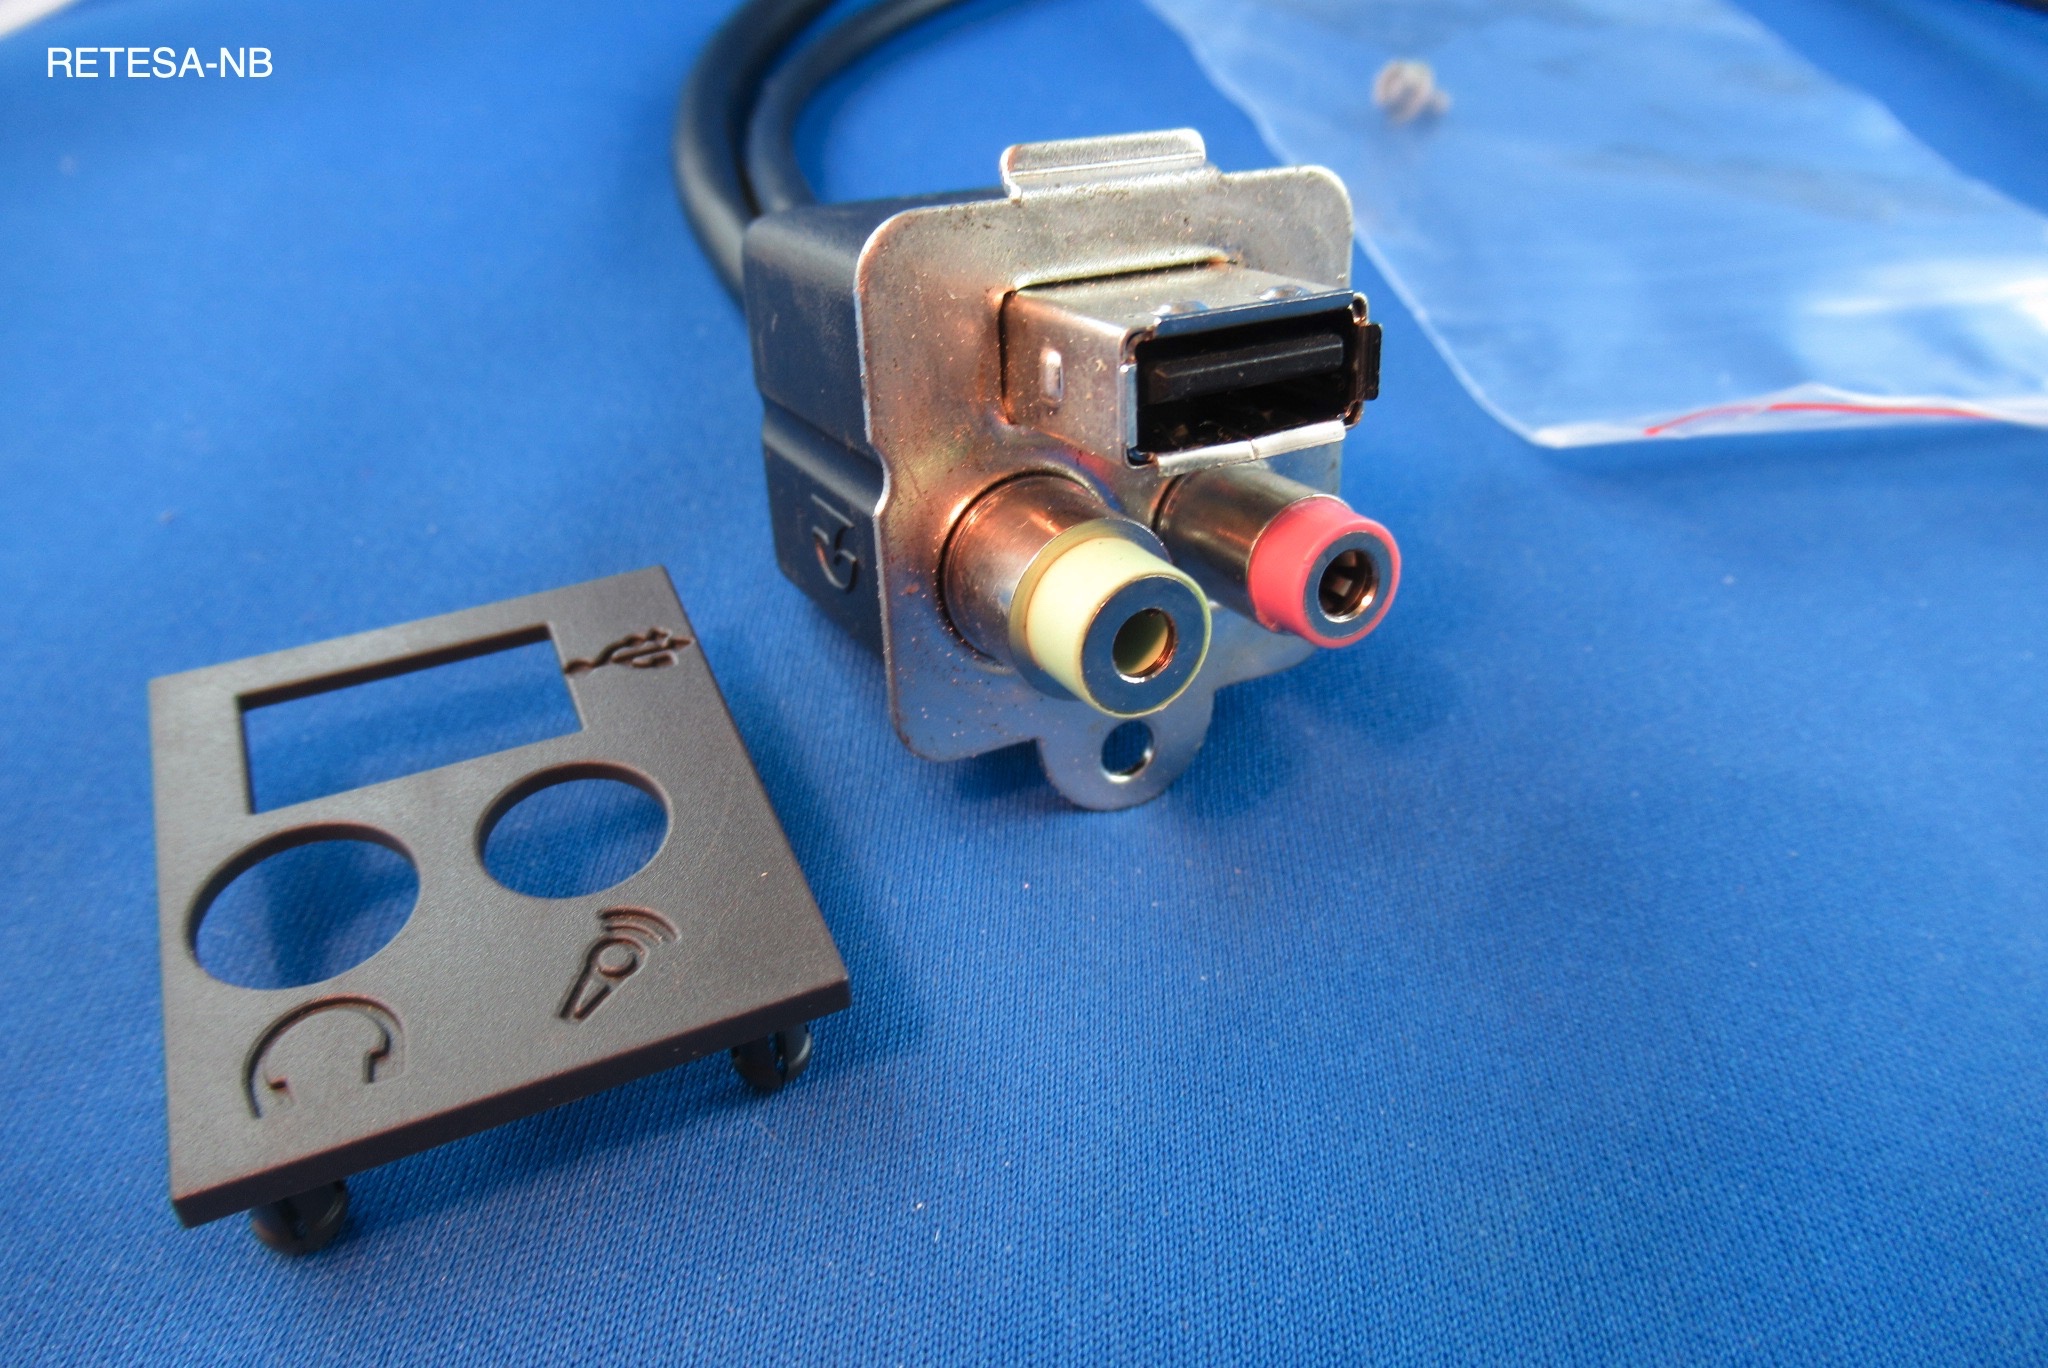 FSC Scenic Sound USB 2.0 Typ A Stecker vorn S26361-F2438-L250